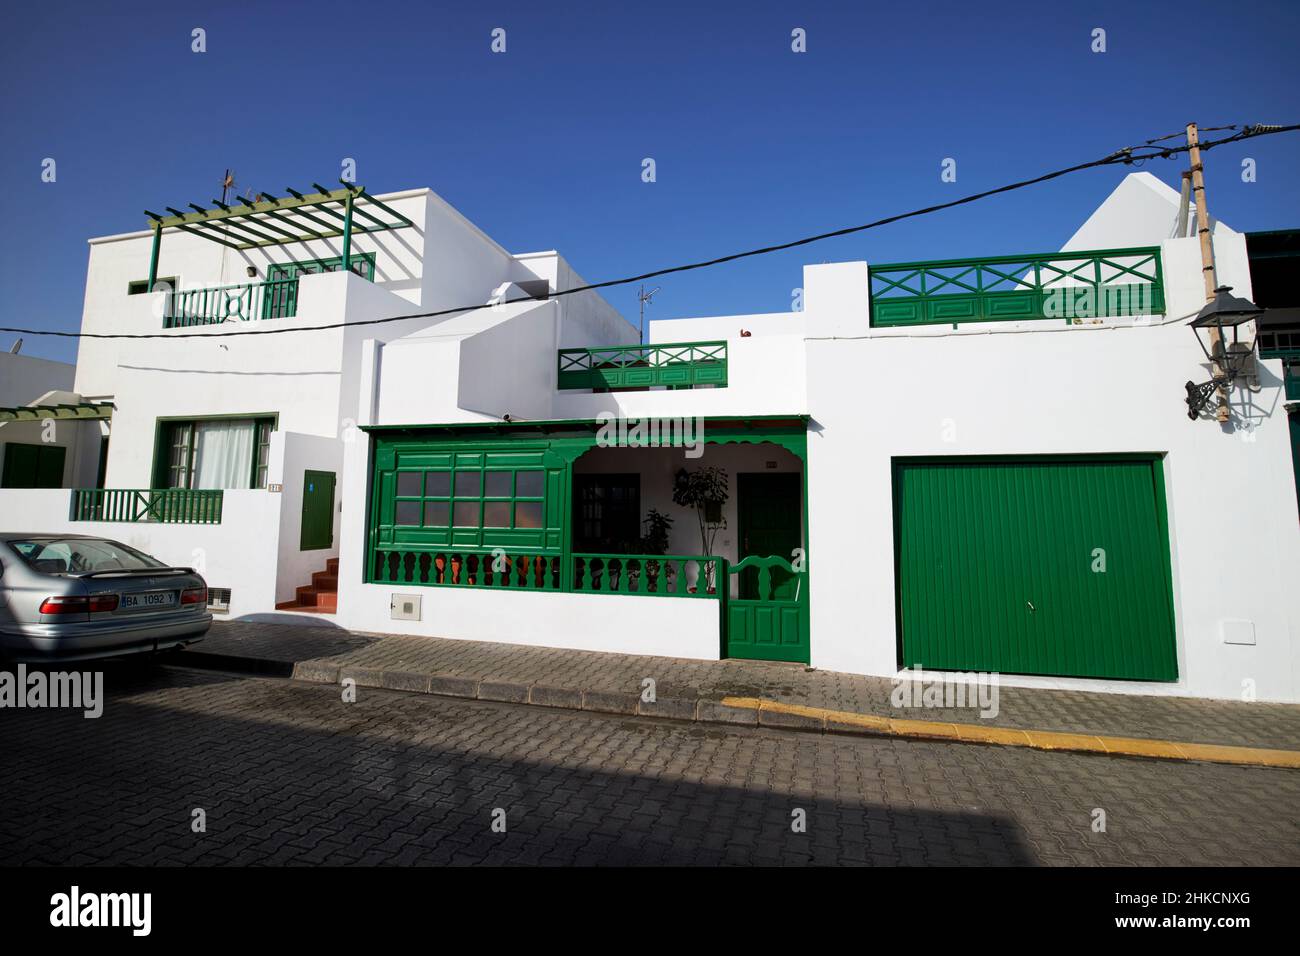 Apartamentos y casas tradicionales encalados con detalles pintados de verde en el casco antiguo de playa blanca Lanzarote Islas Canarias España Foto de stock